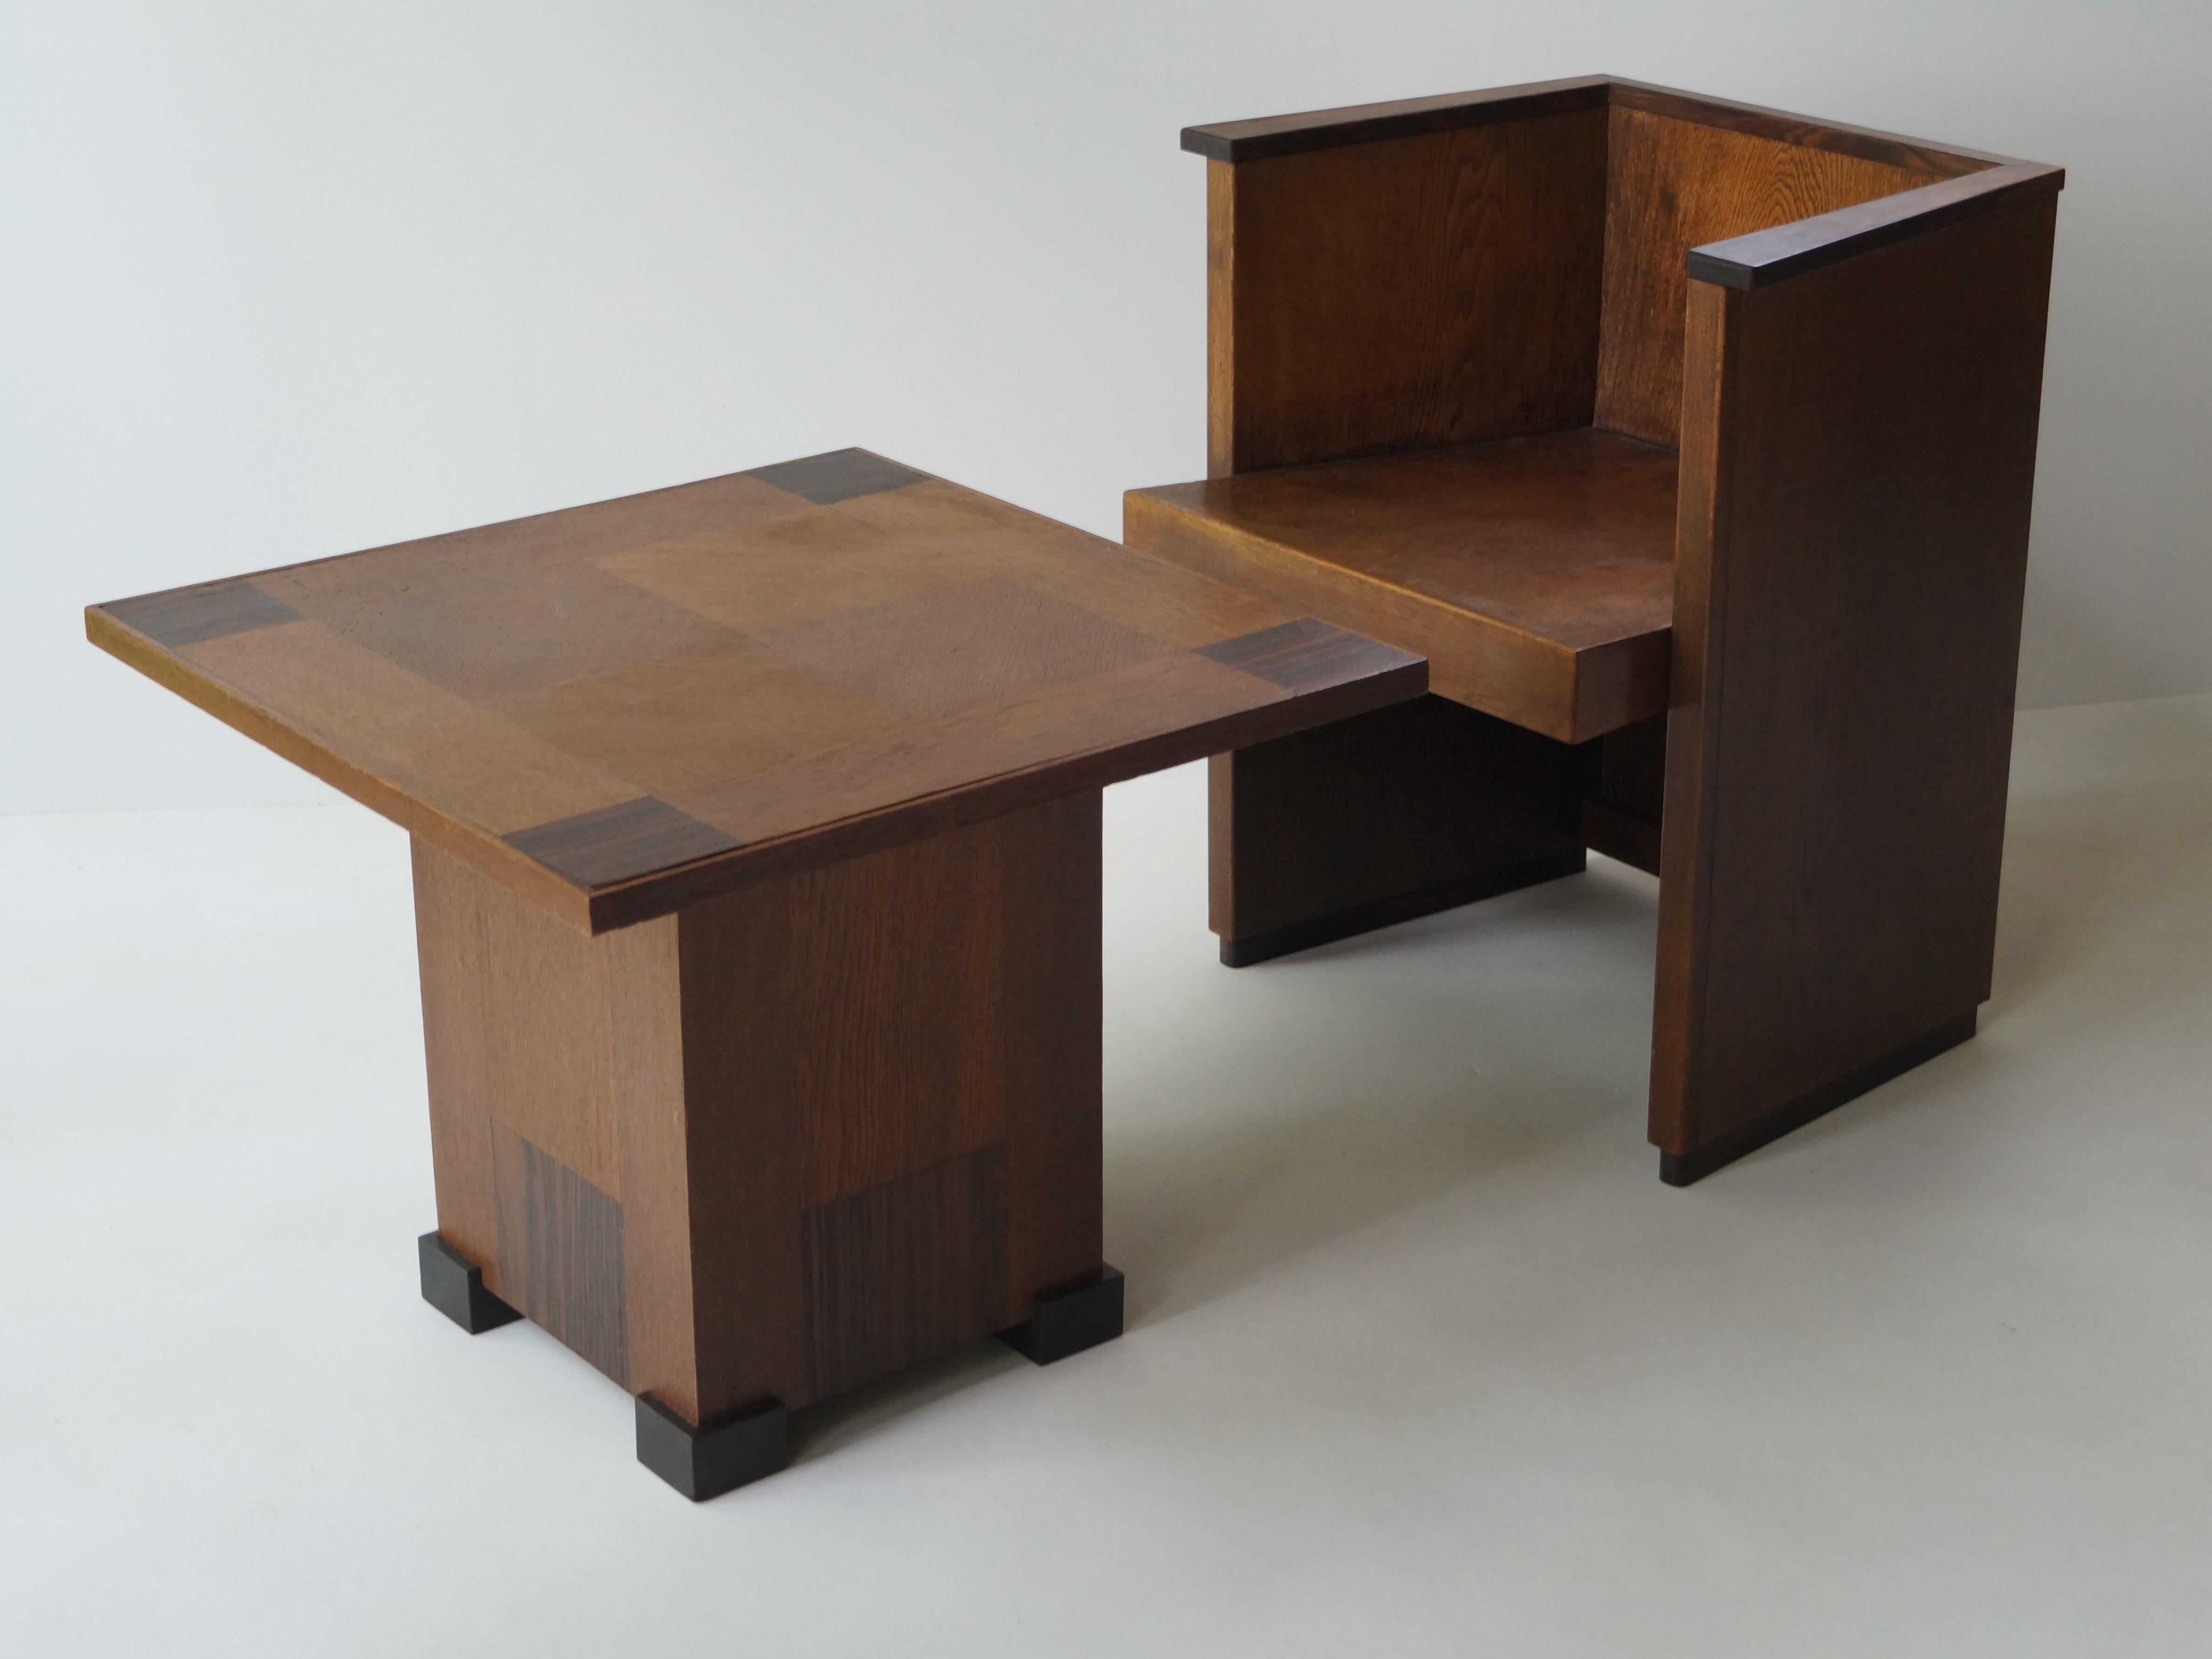 Chêne Table basse Art Déco moderniste néerlandaise dans le style de P.E.L. Izeren, années 1920